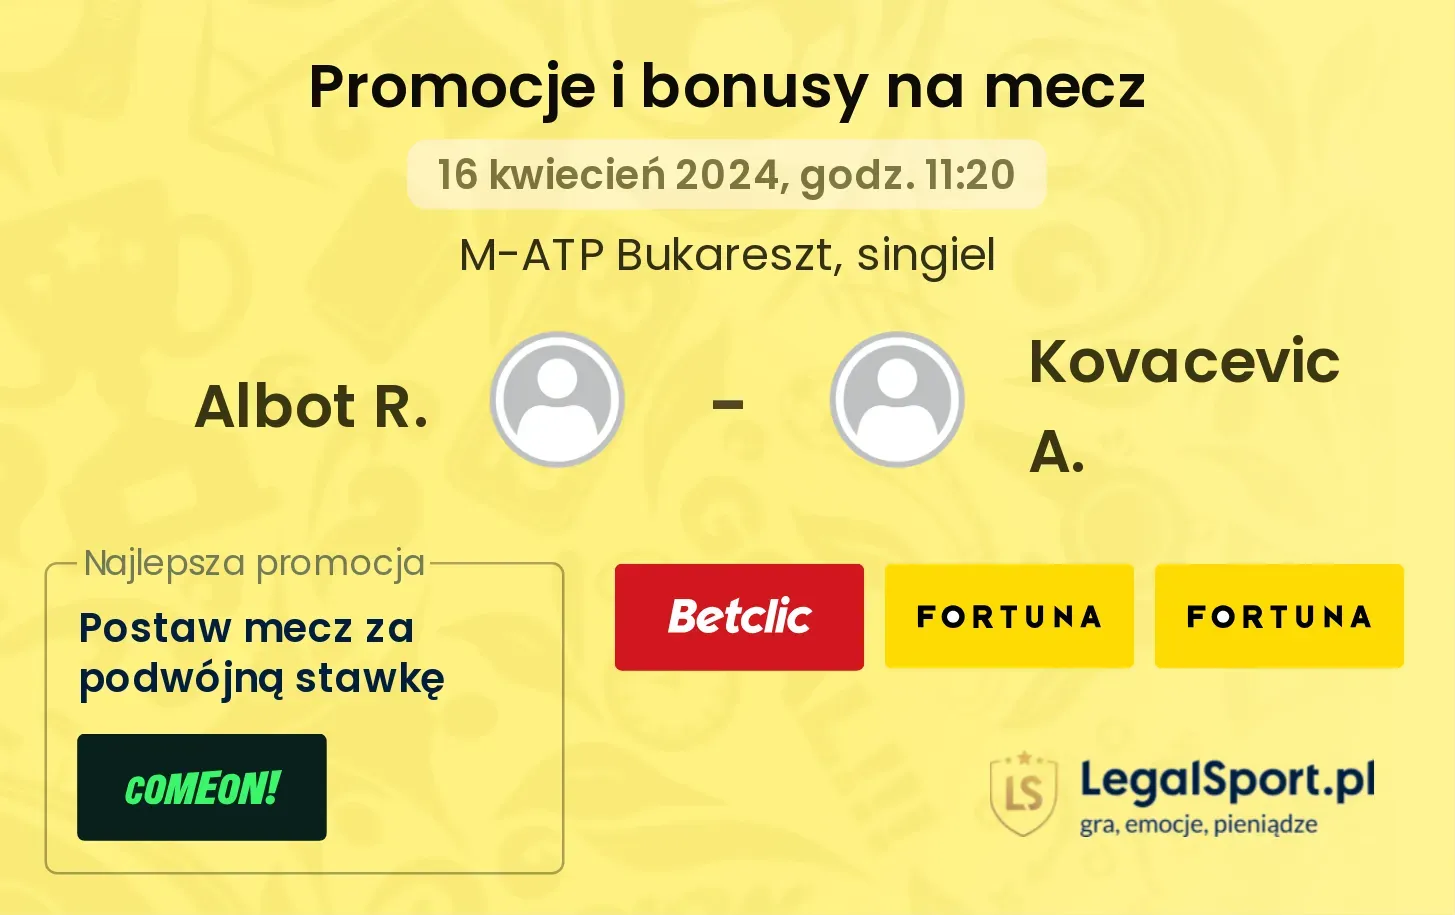 Albot R. - Kovacevic A. promocje bonusy na mecz